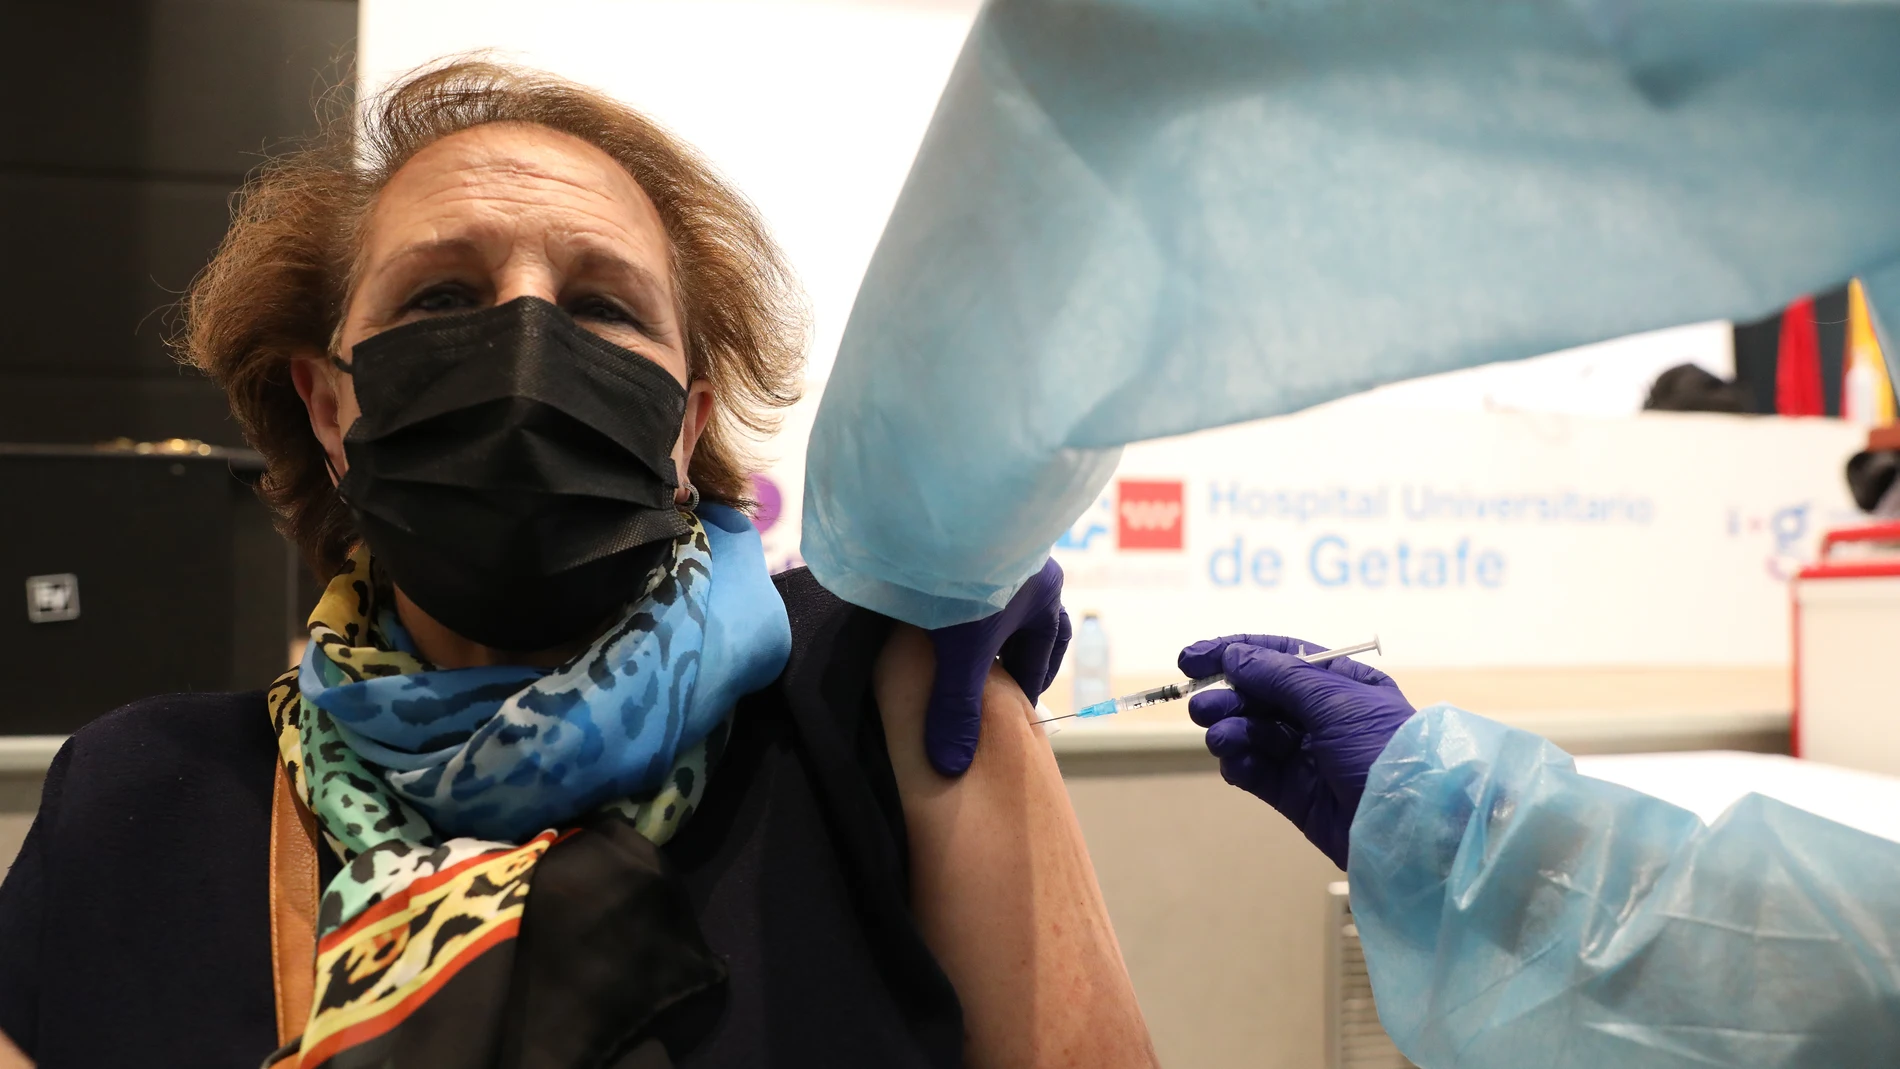 Una persona recibe la primera dosis de vacuna Pfizer contra la Covid-19 en el Hospital de Getafe, Madrid